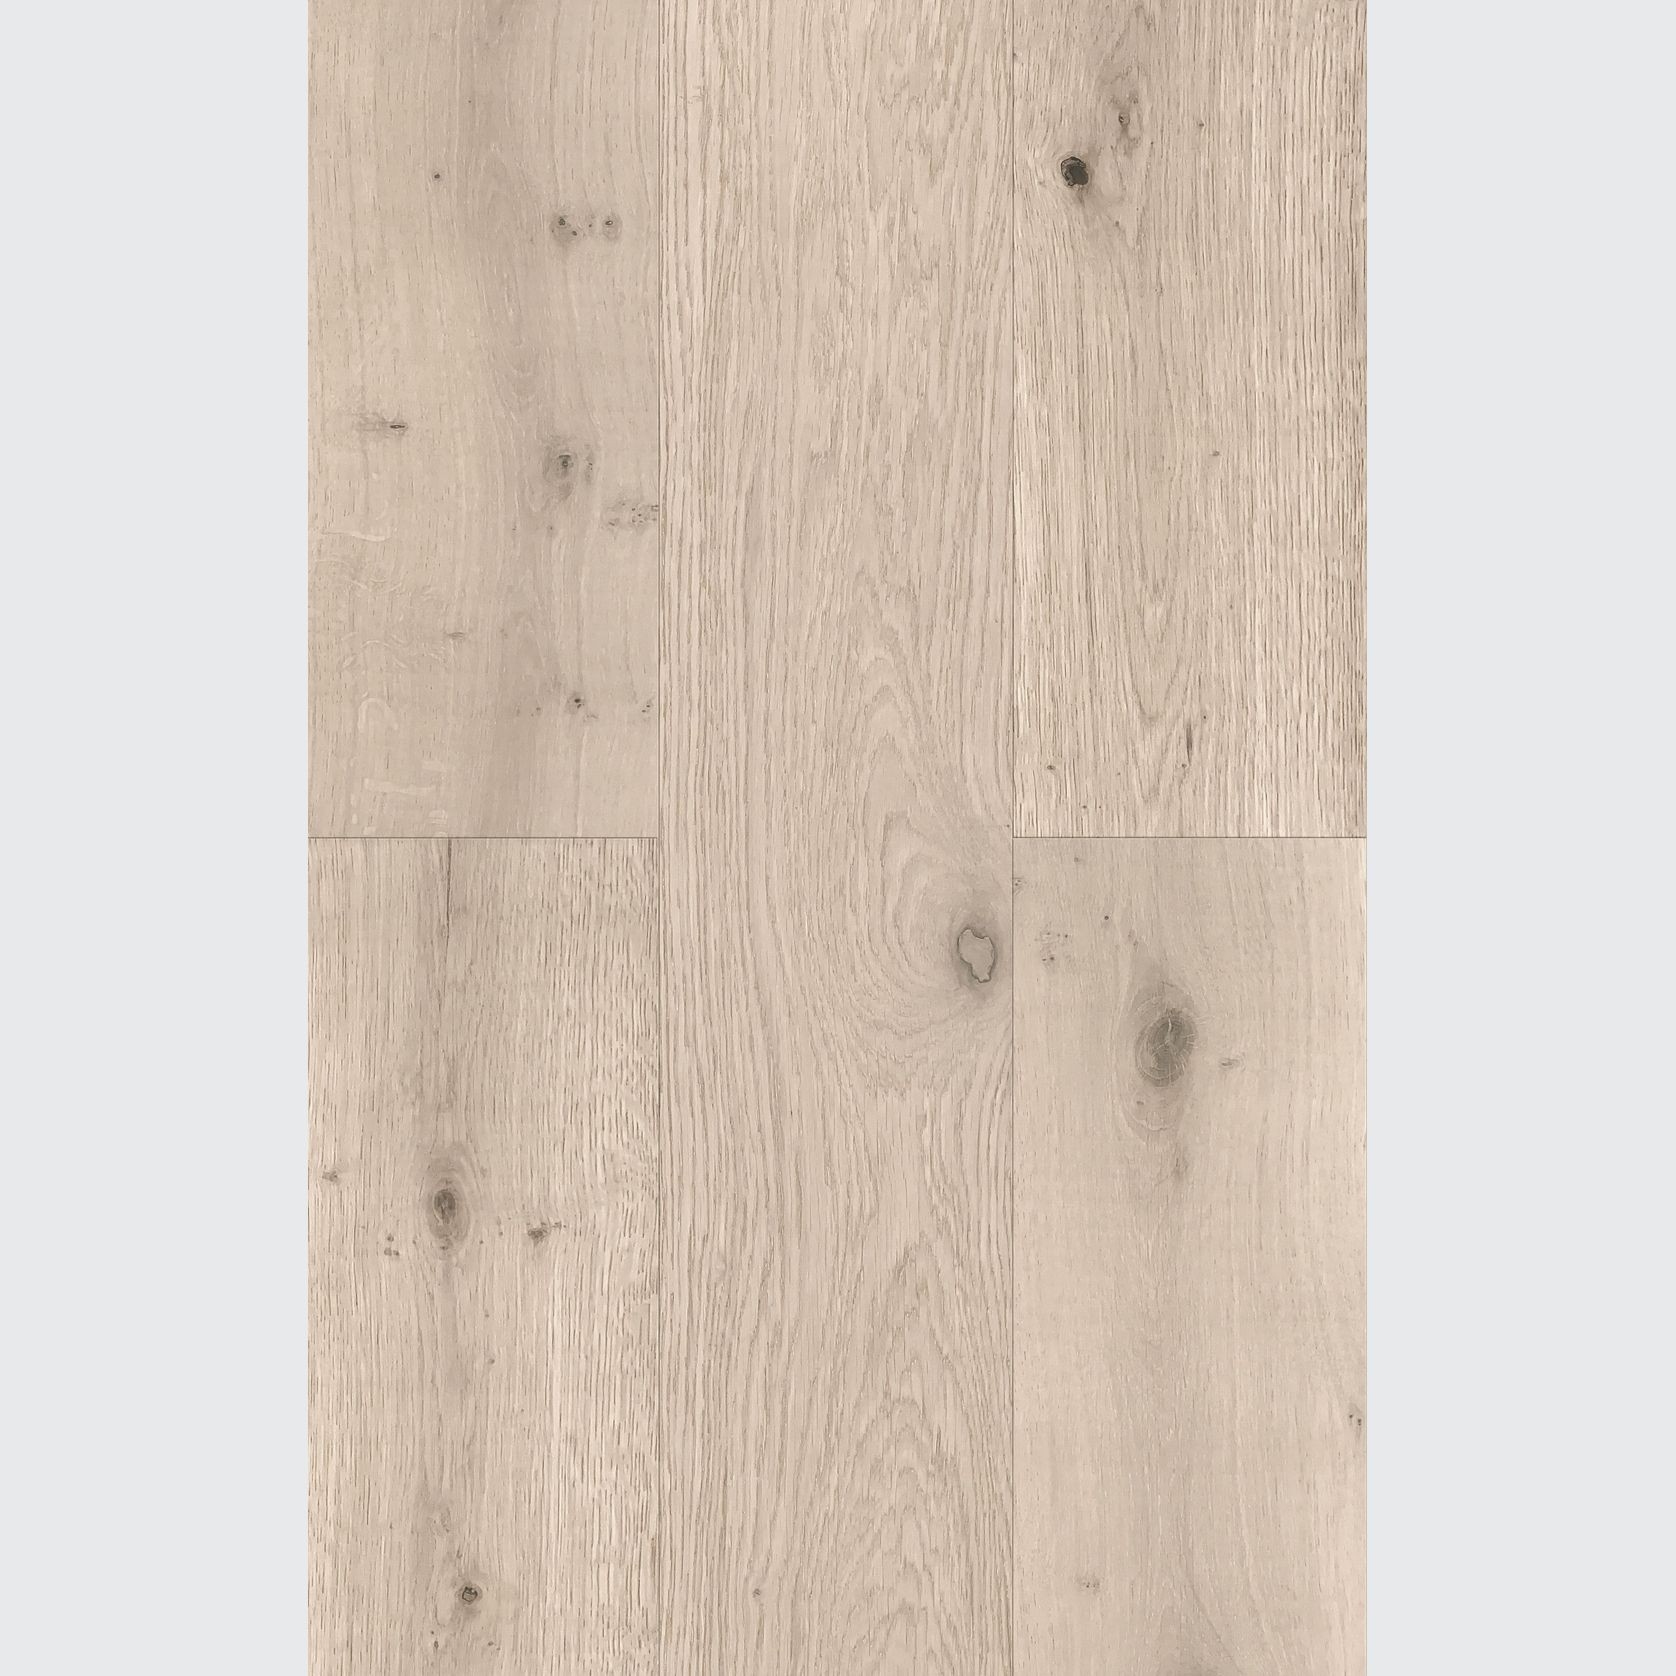 Atelier Dolomite Herringbone Timber Flooring gallery detail image